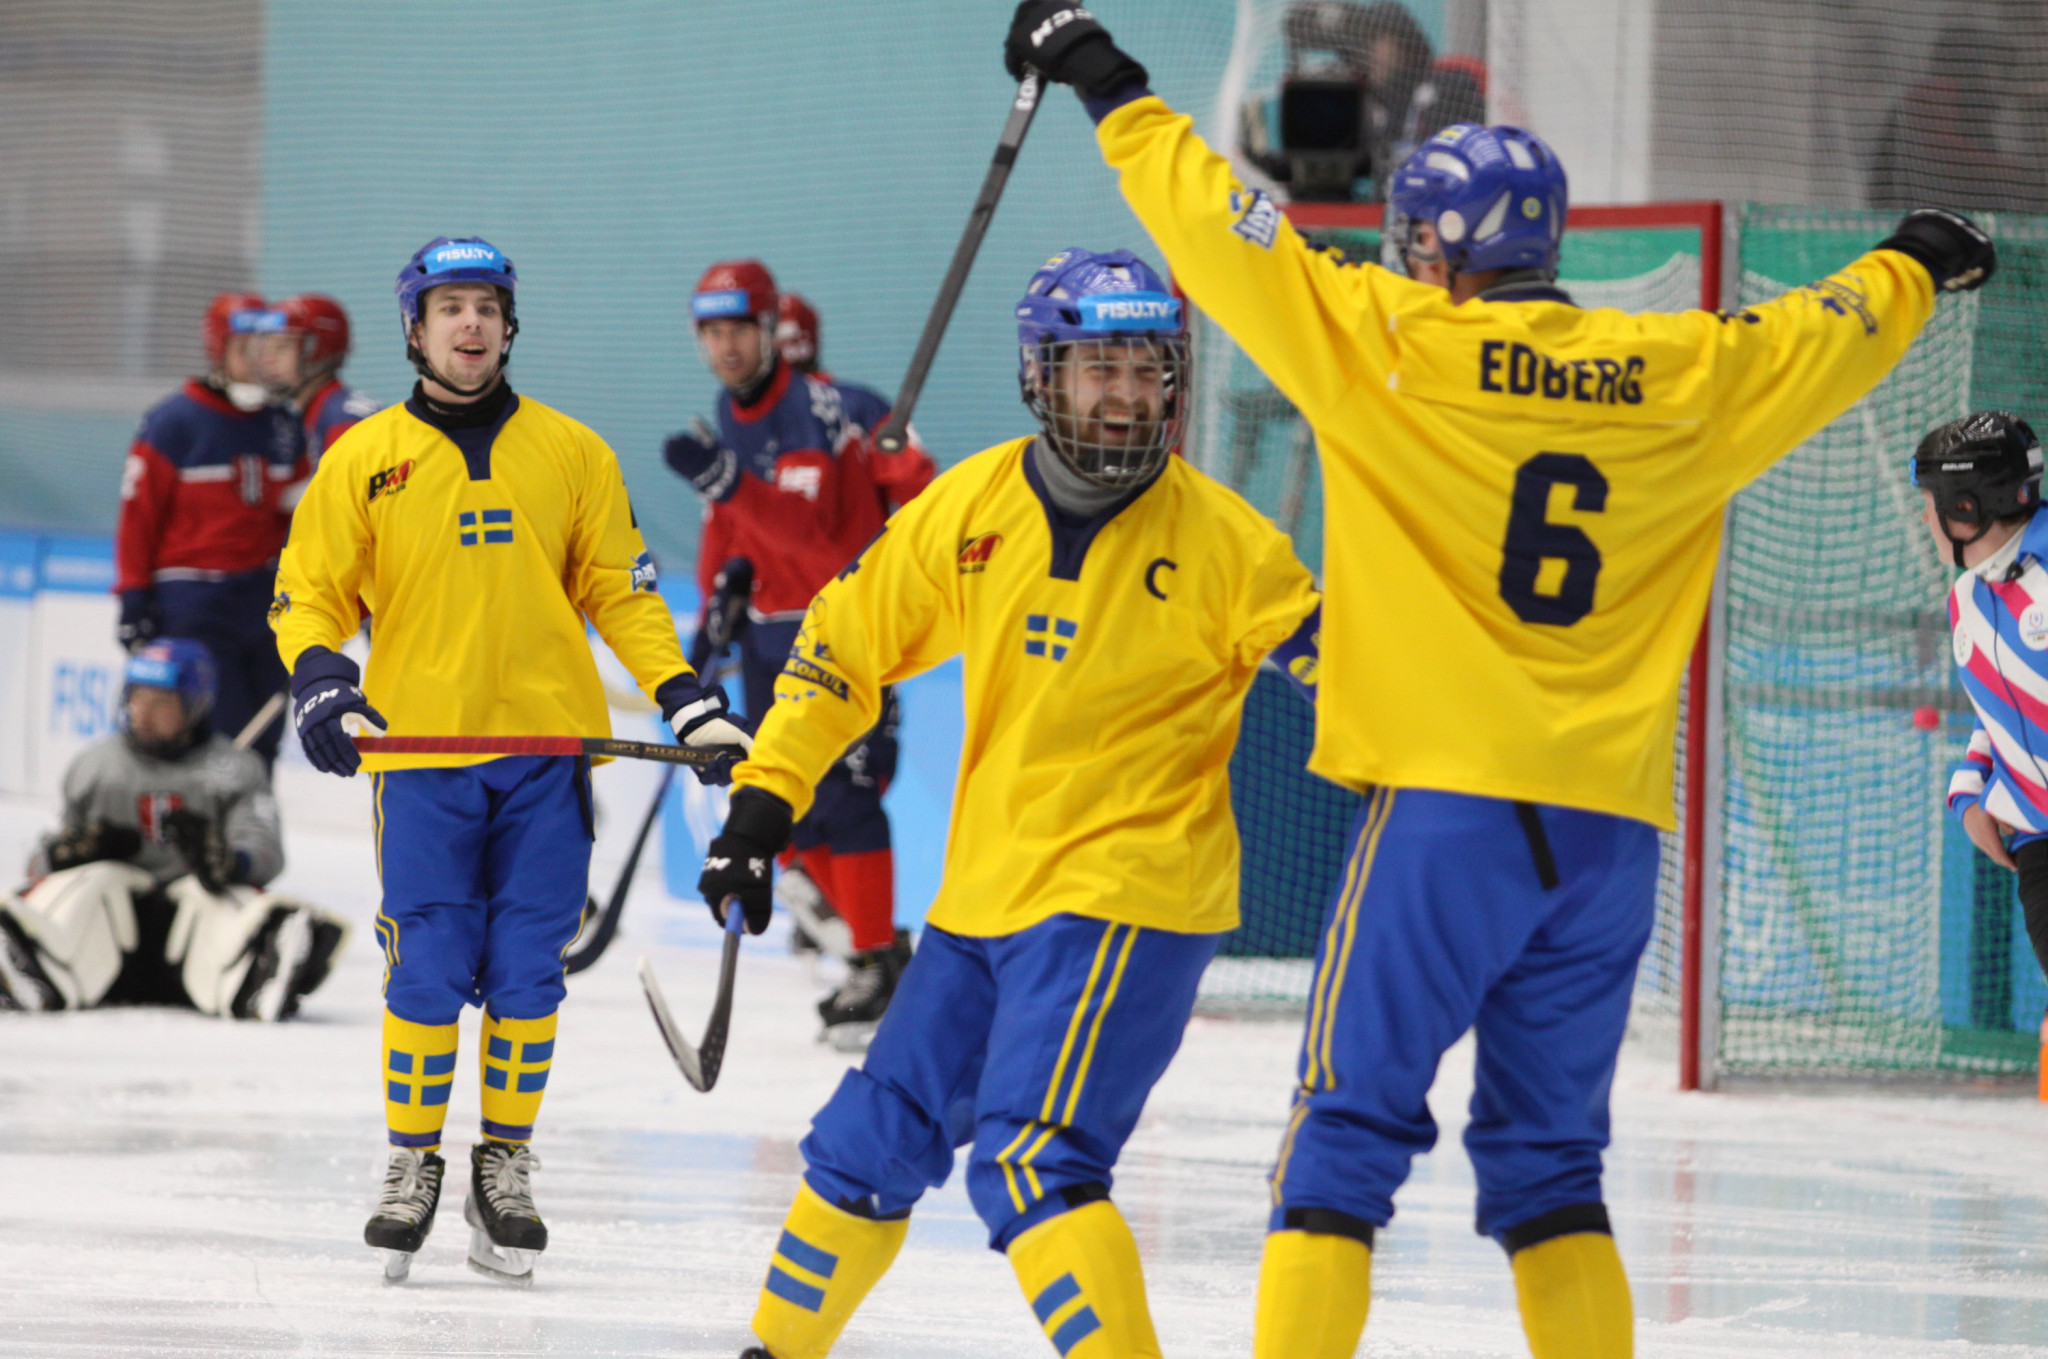 Sweden made a strong start in the men's bandy event ©Krasnoyarsk 2019